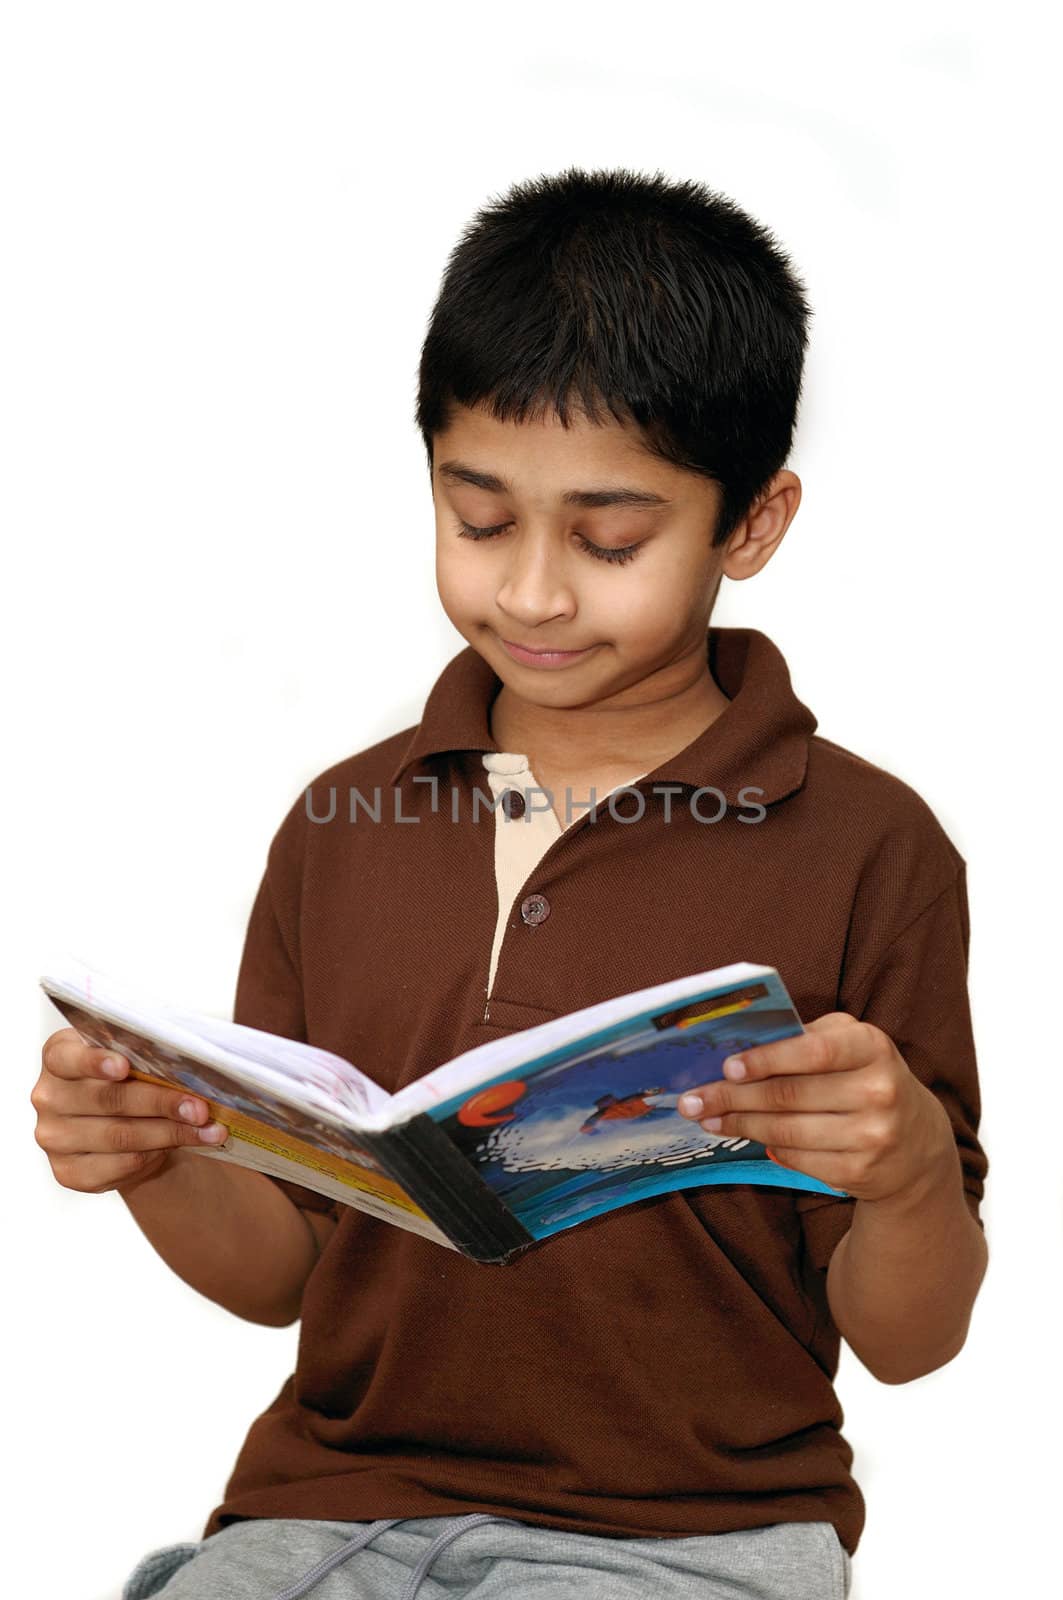 An adorable boy reading his school book